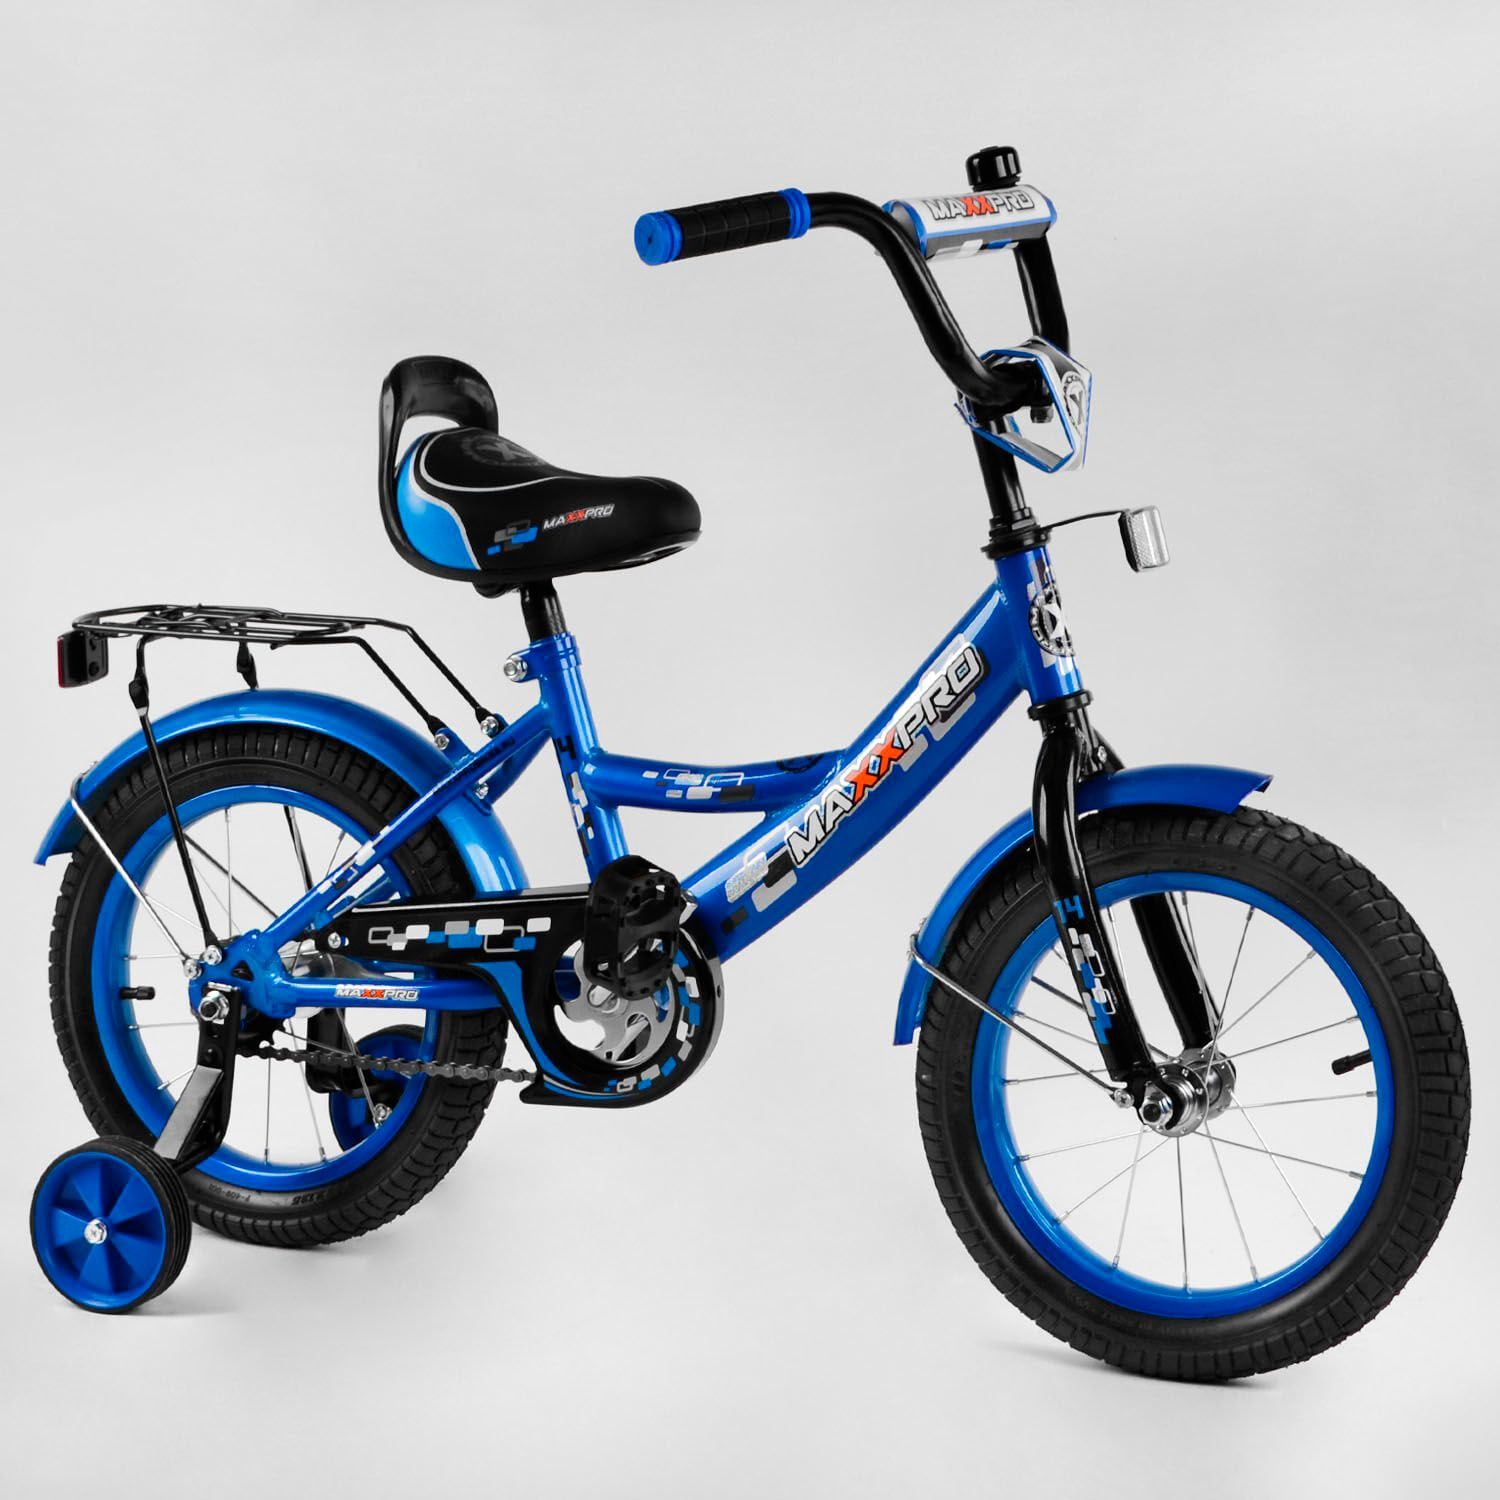 Двухколёсный велосипед 14" дюймов MAXXPRO-N14-4 ножной тормоз, звоночек, сидение с ручкой, доп. колеса, багажник, СОБРАННЫЙ НА 75, в коробке